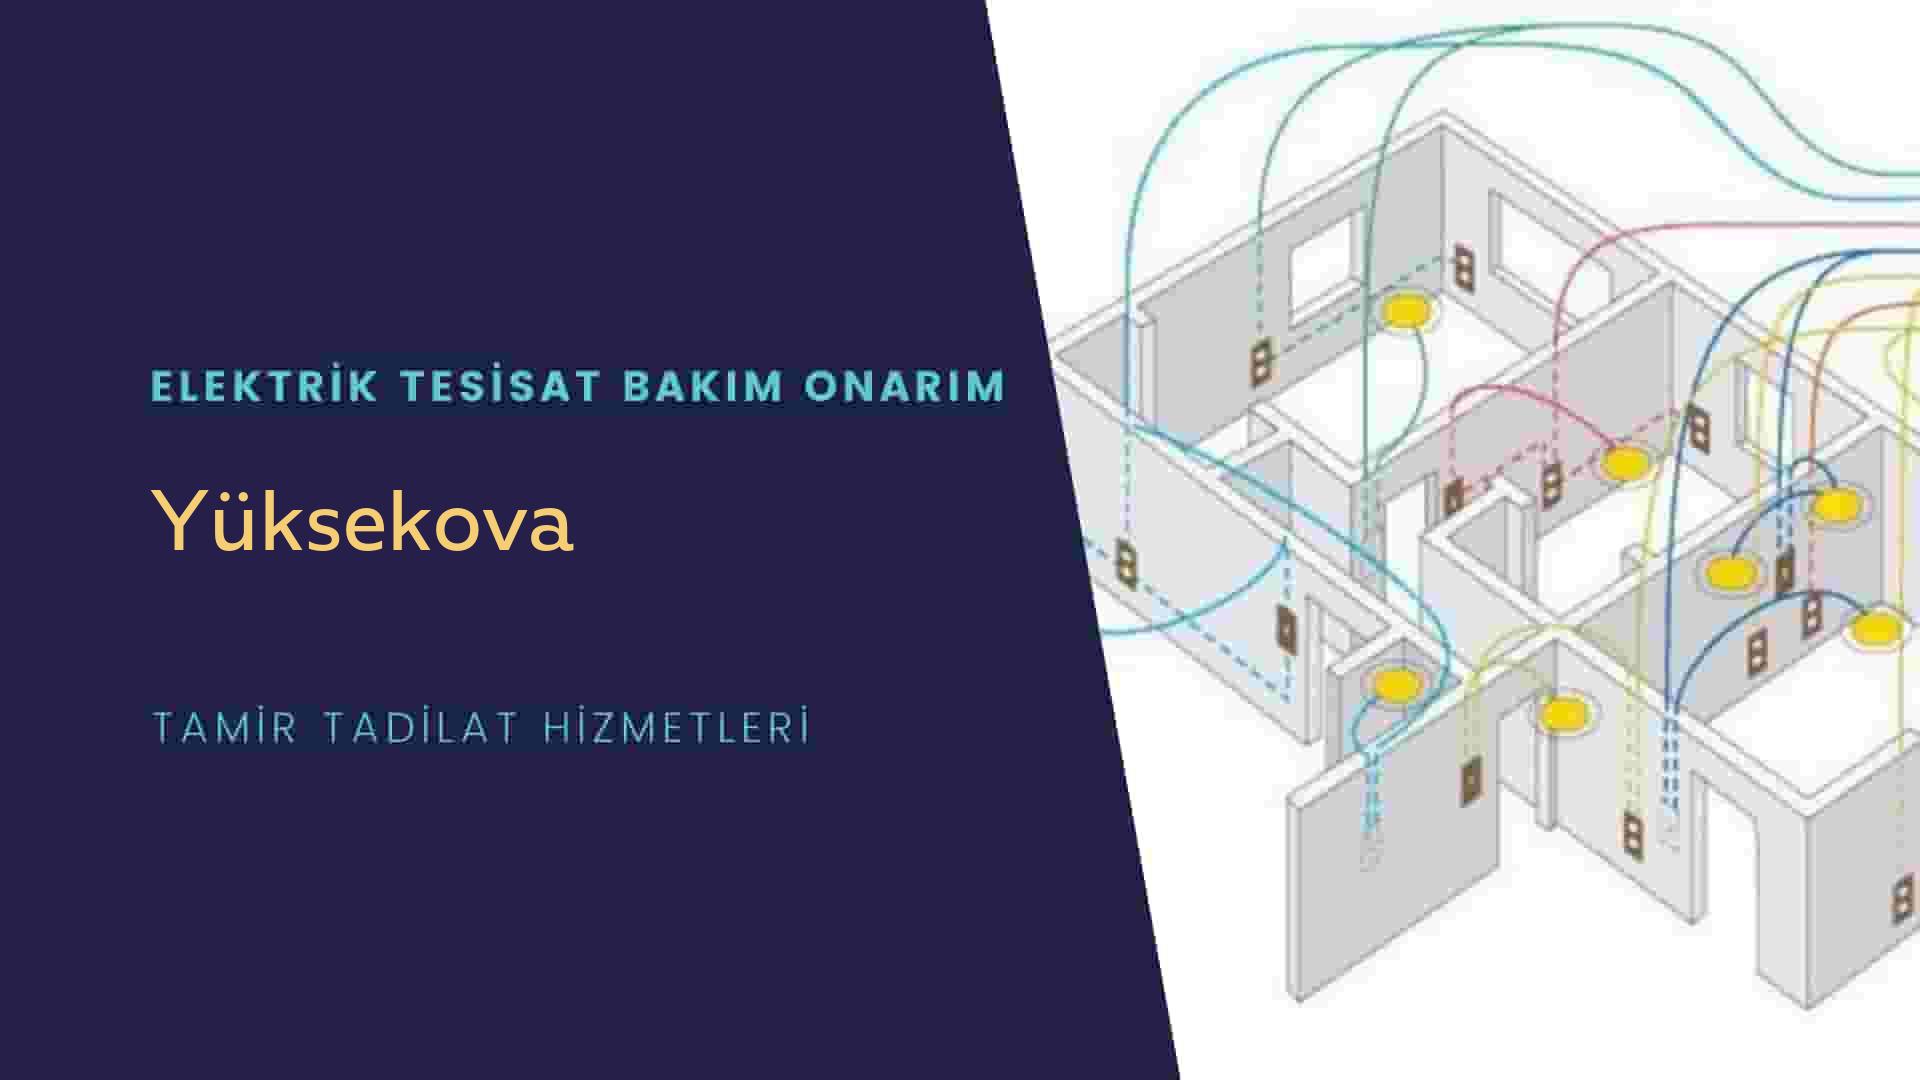 Yüksekova'da elektrik tesisatı ustalarımı arıyorsunuz doğru adrestenizi Yüksekova elektrik tesisatı ustalarımız 7/24 sizlere hizmet vermekten mutluluk duyar.